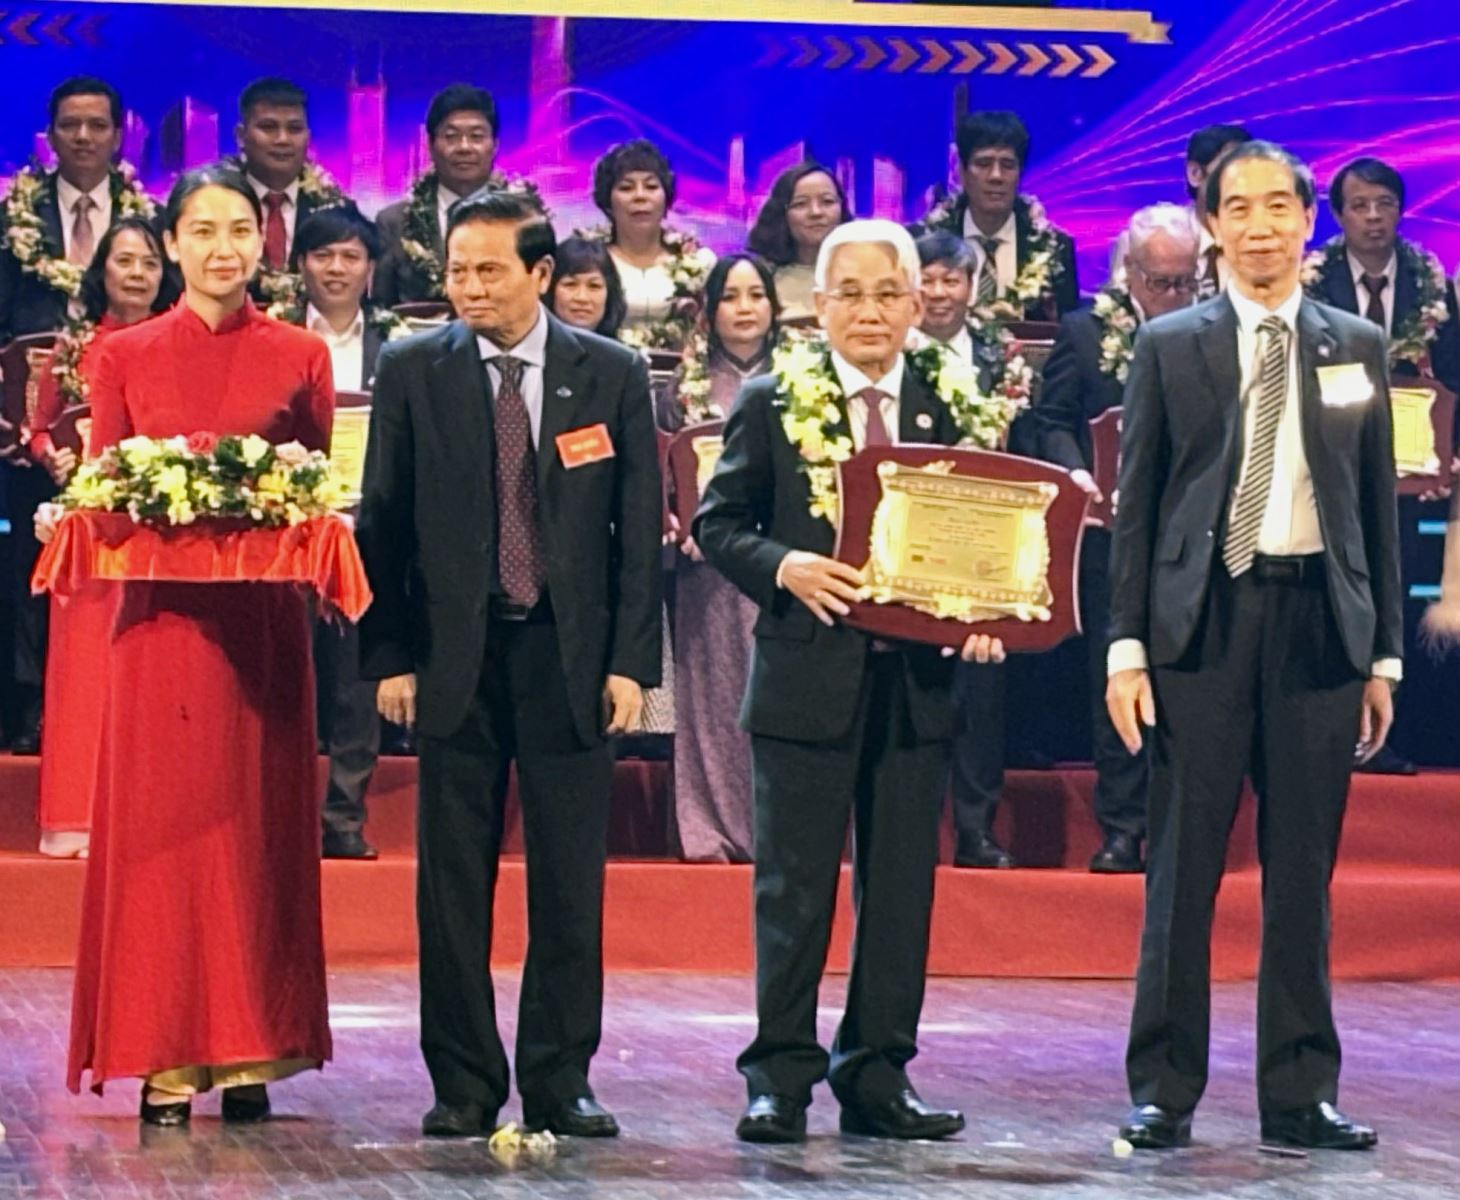 Nhà giáo Ưu tú, Phó Giáo sư, Tiến sĩ Lương Minh Cừ - Bí thư Đảng uỷ, Hiệu trưởng Nhà trường nhận giải thưởng Trí thức tiêu biểu Việt Nam.